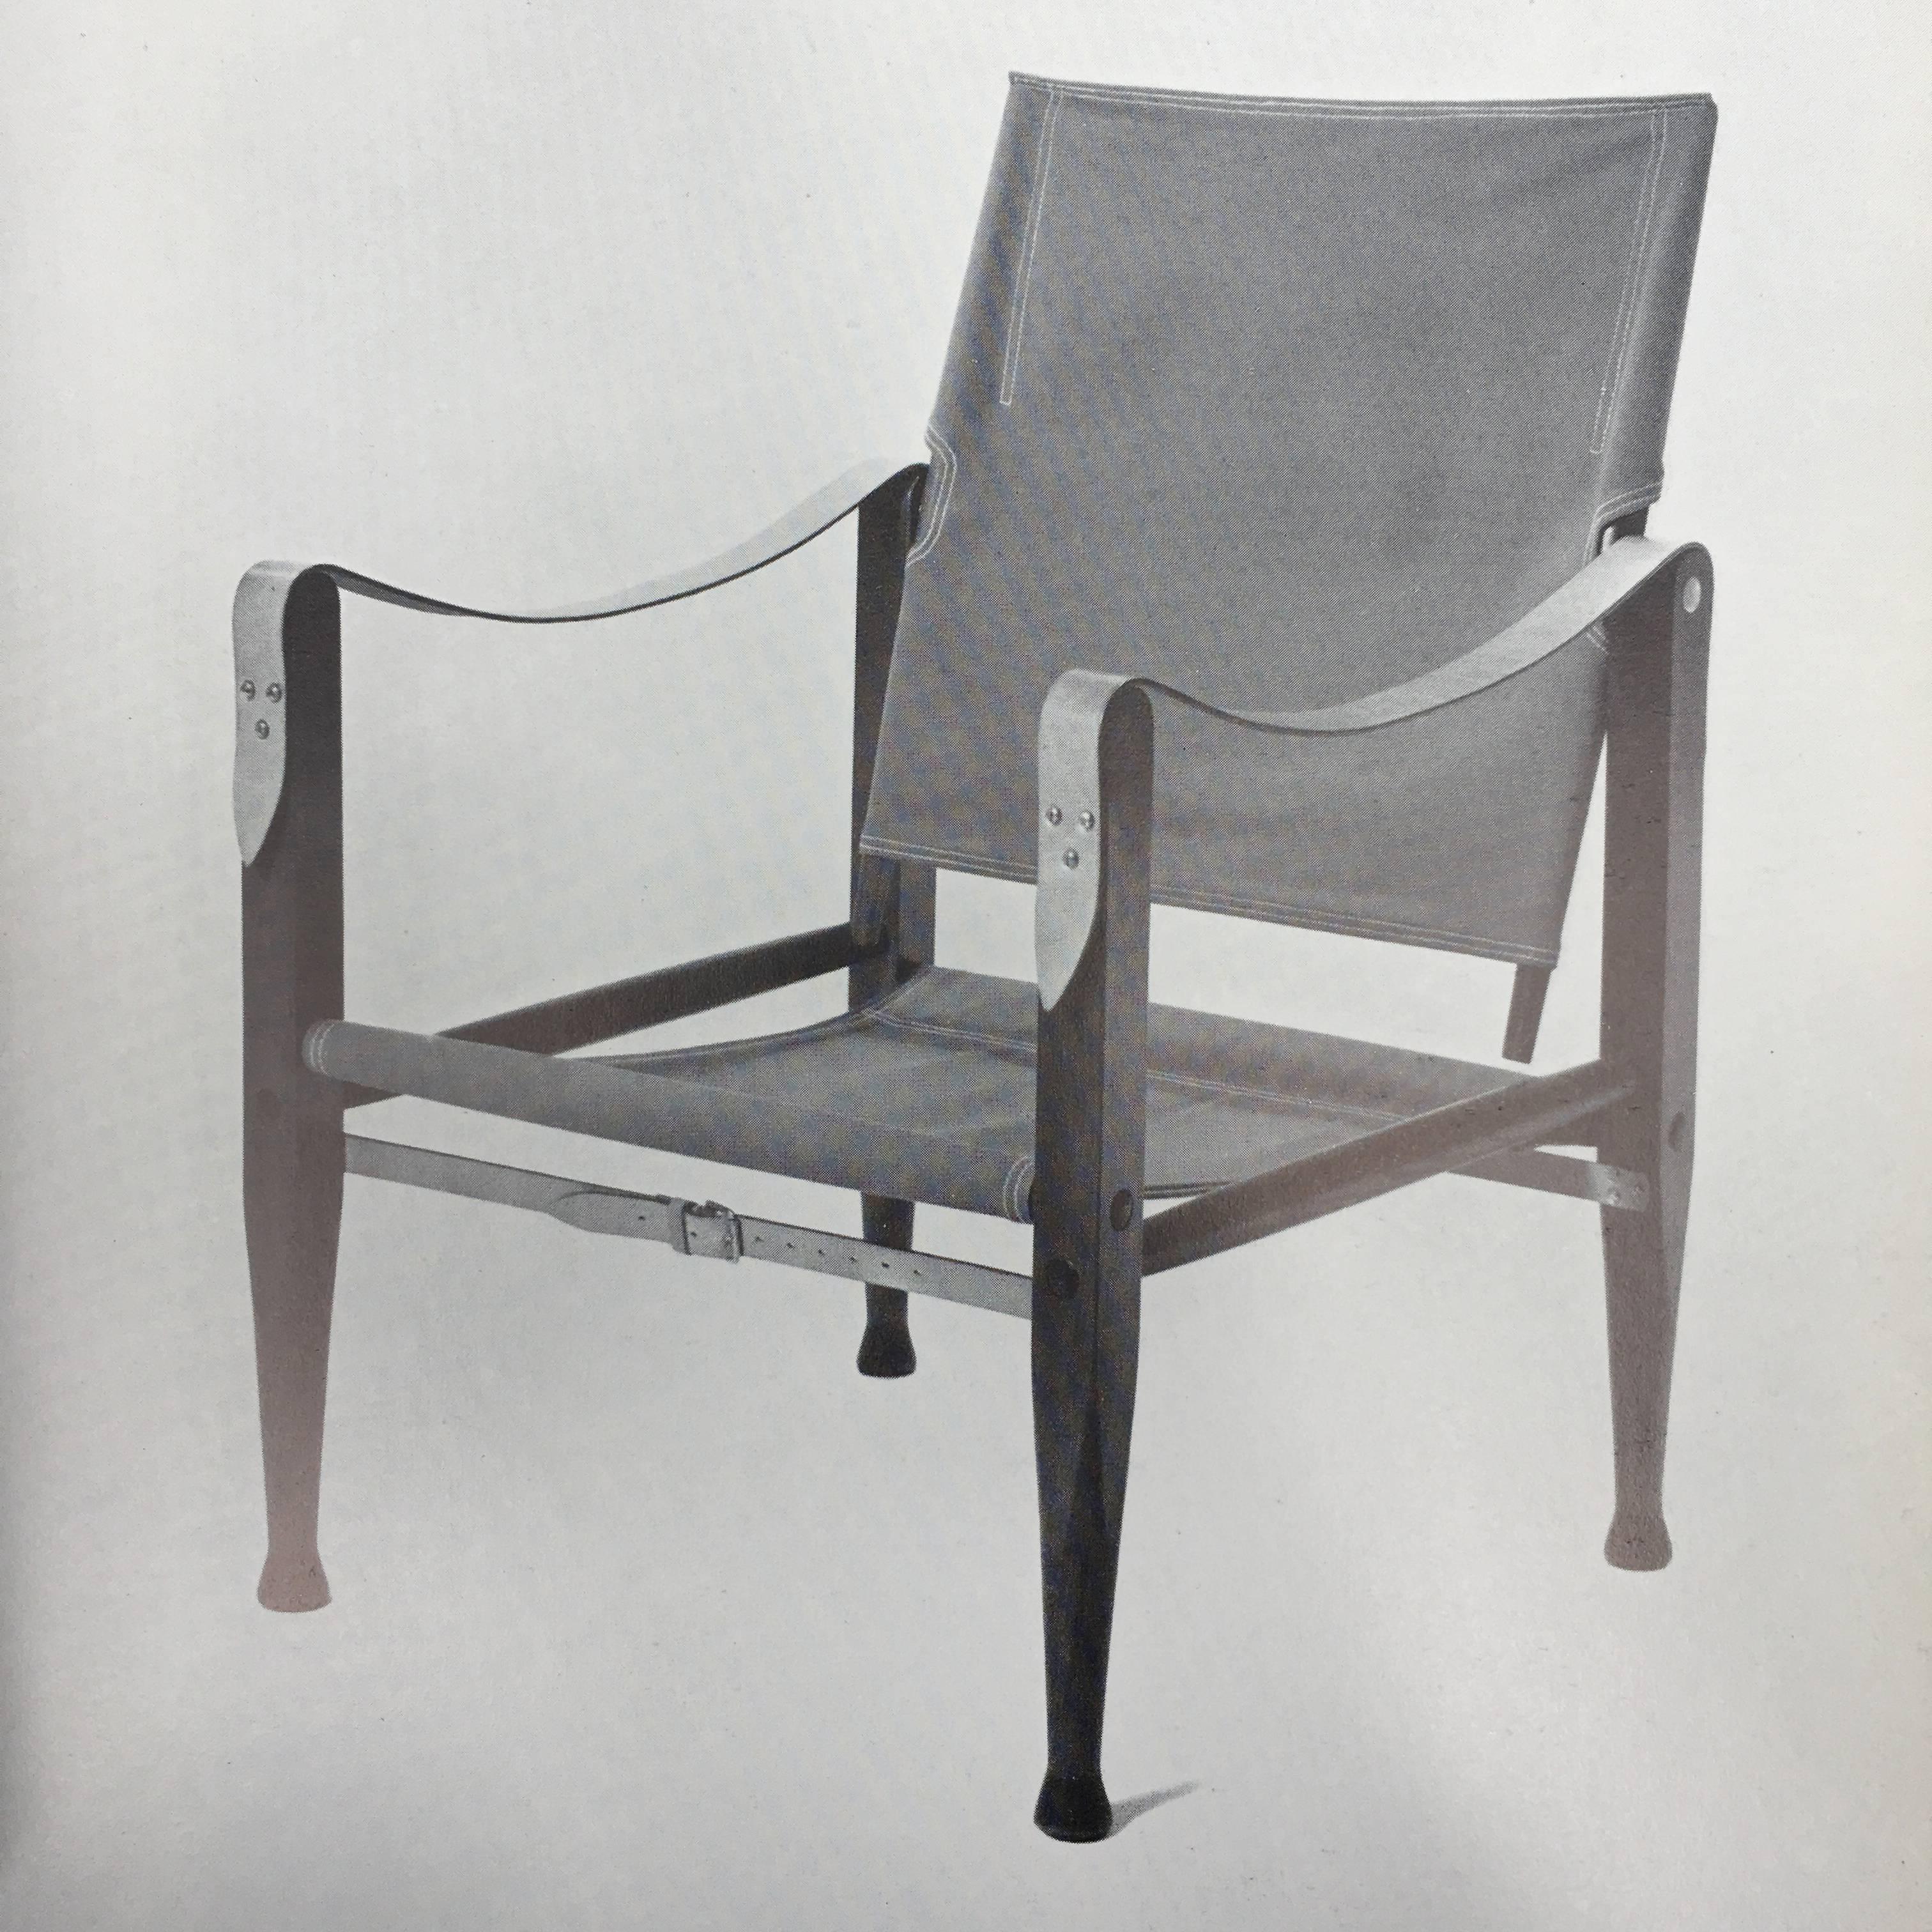 Danske Stole Danish Chairs, 1954 For Sale 3